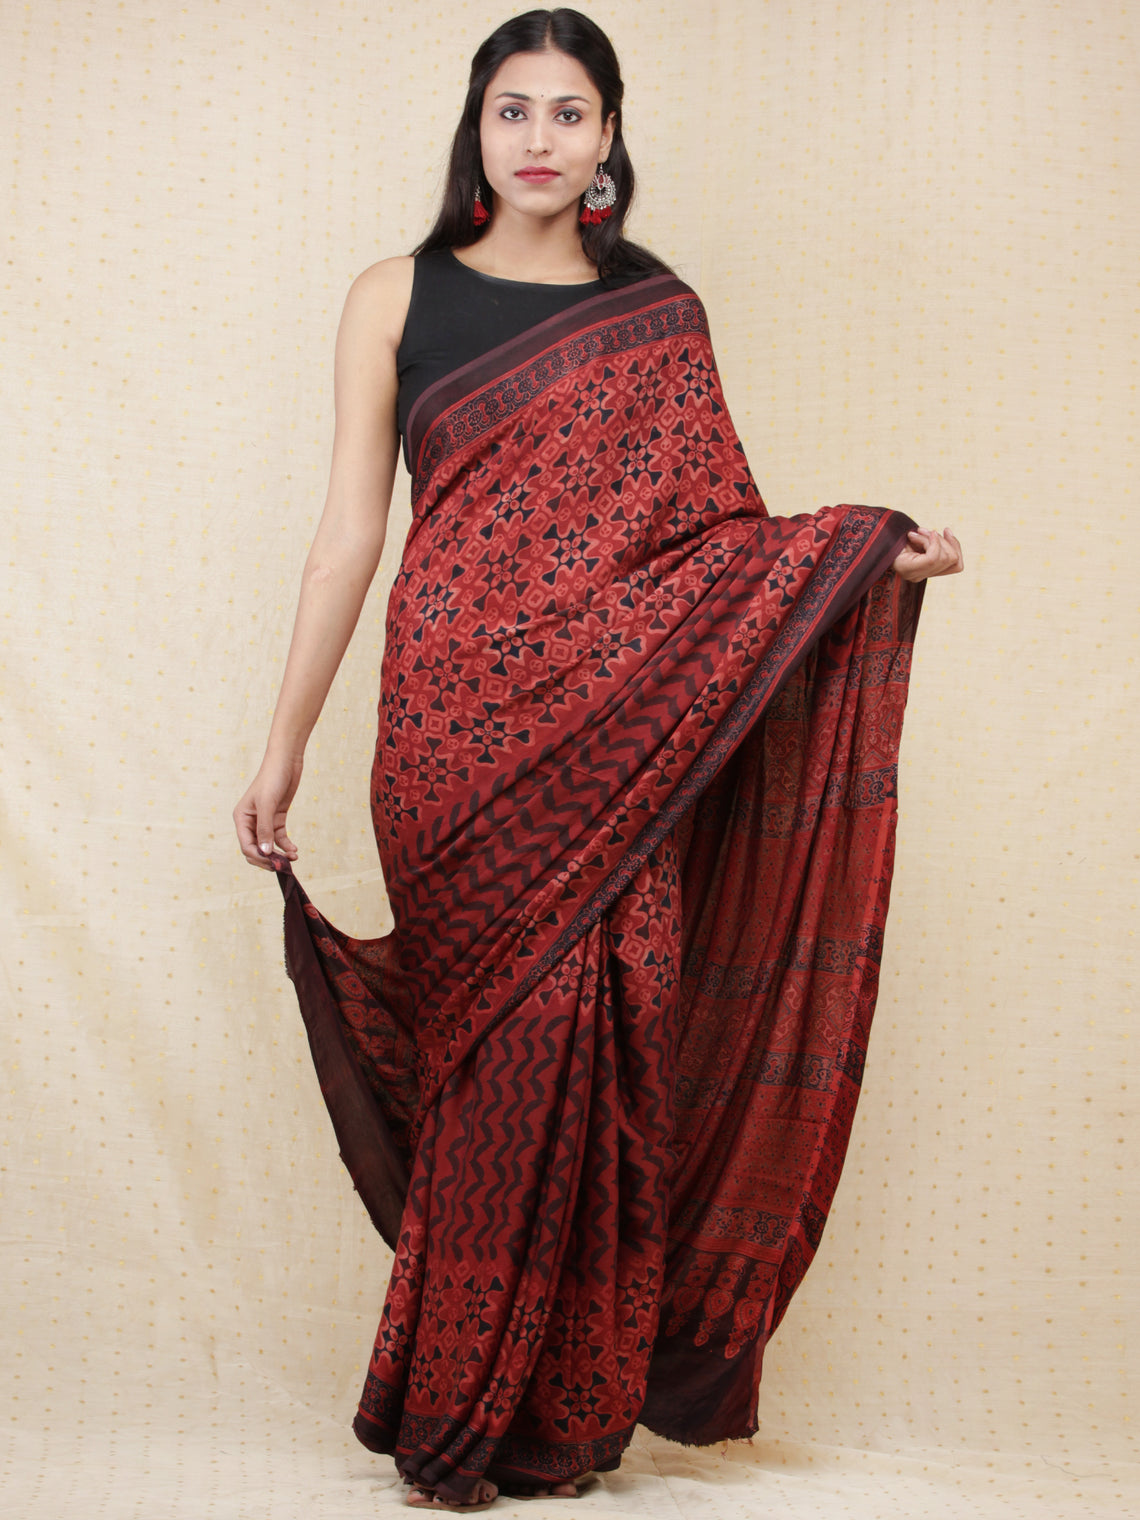 Ajrakh Hand Block Printed Modal Silk Saree at InduBindu